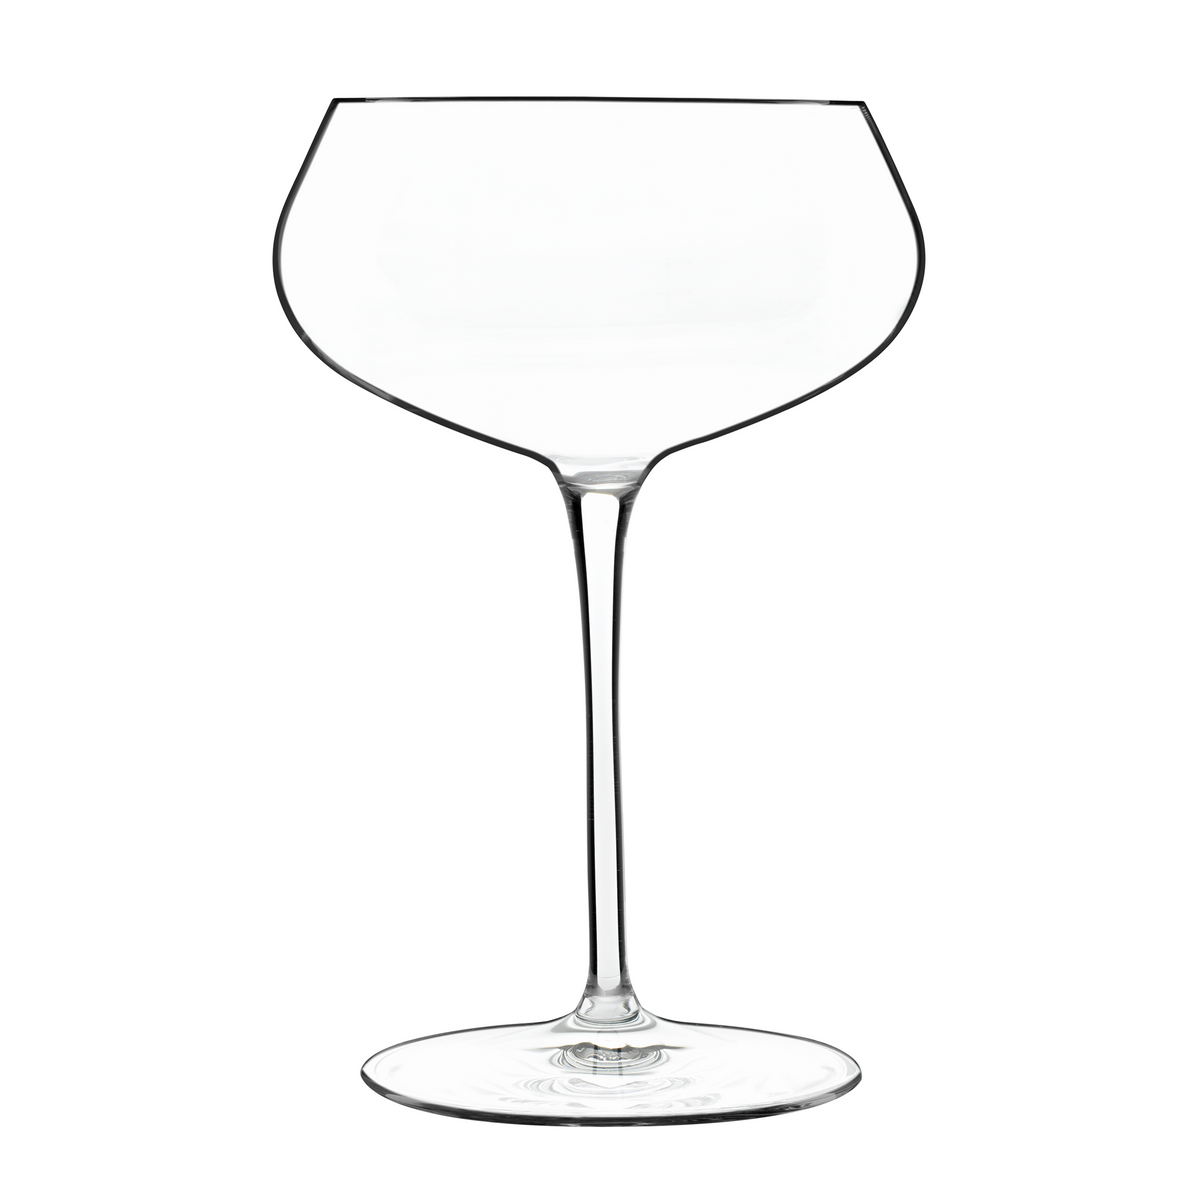 TENTAZIONI 10.25 OZ SPUMANTE COUPE WINE GLASSES (SET OF 6)